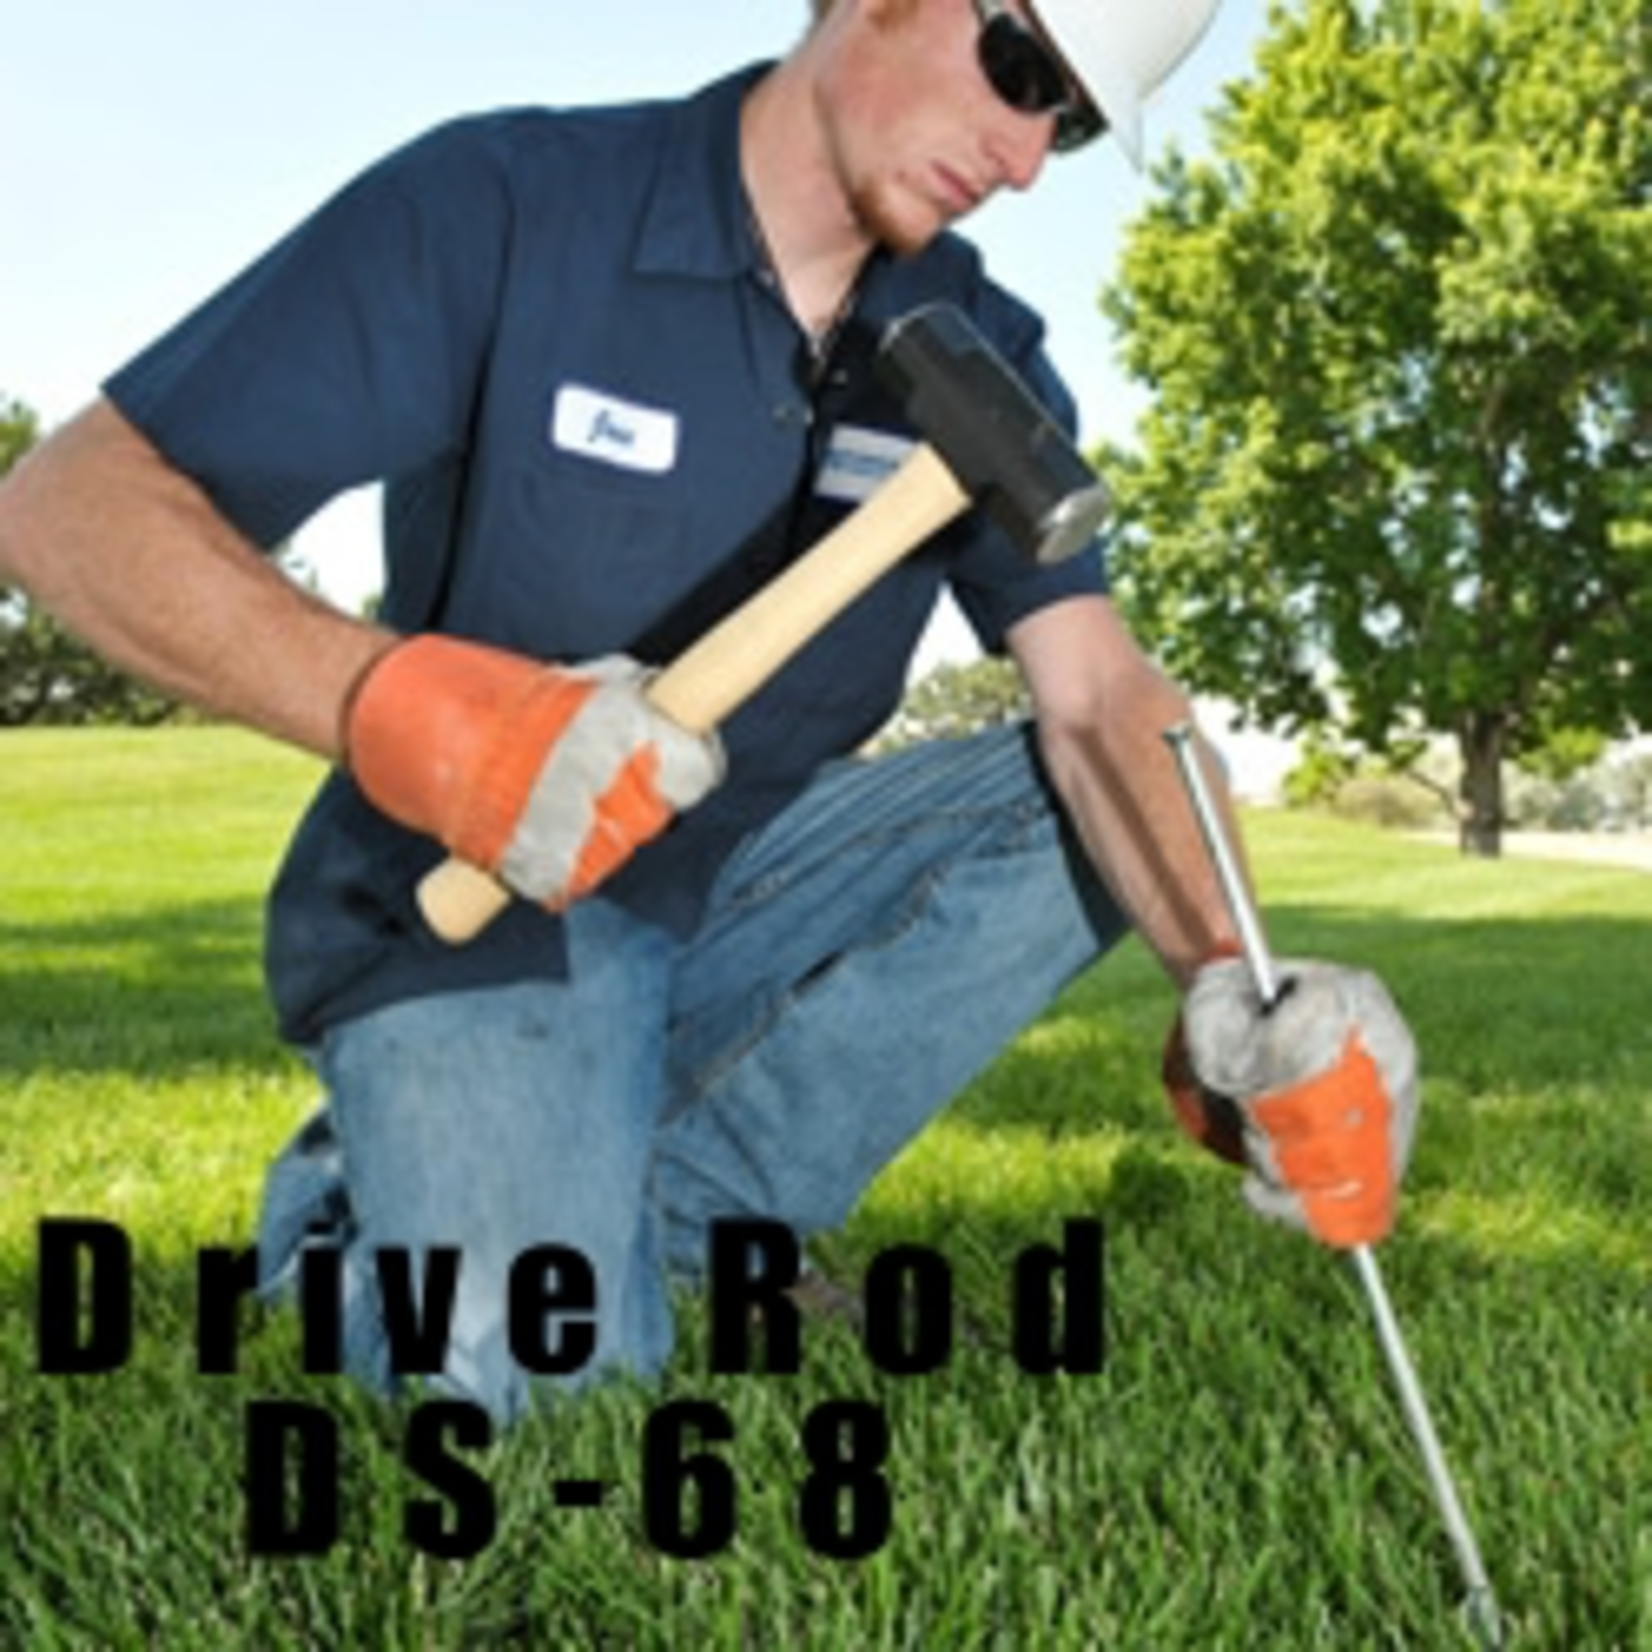 DuckBill Drive Rod Duckbill DS-68 36" Long